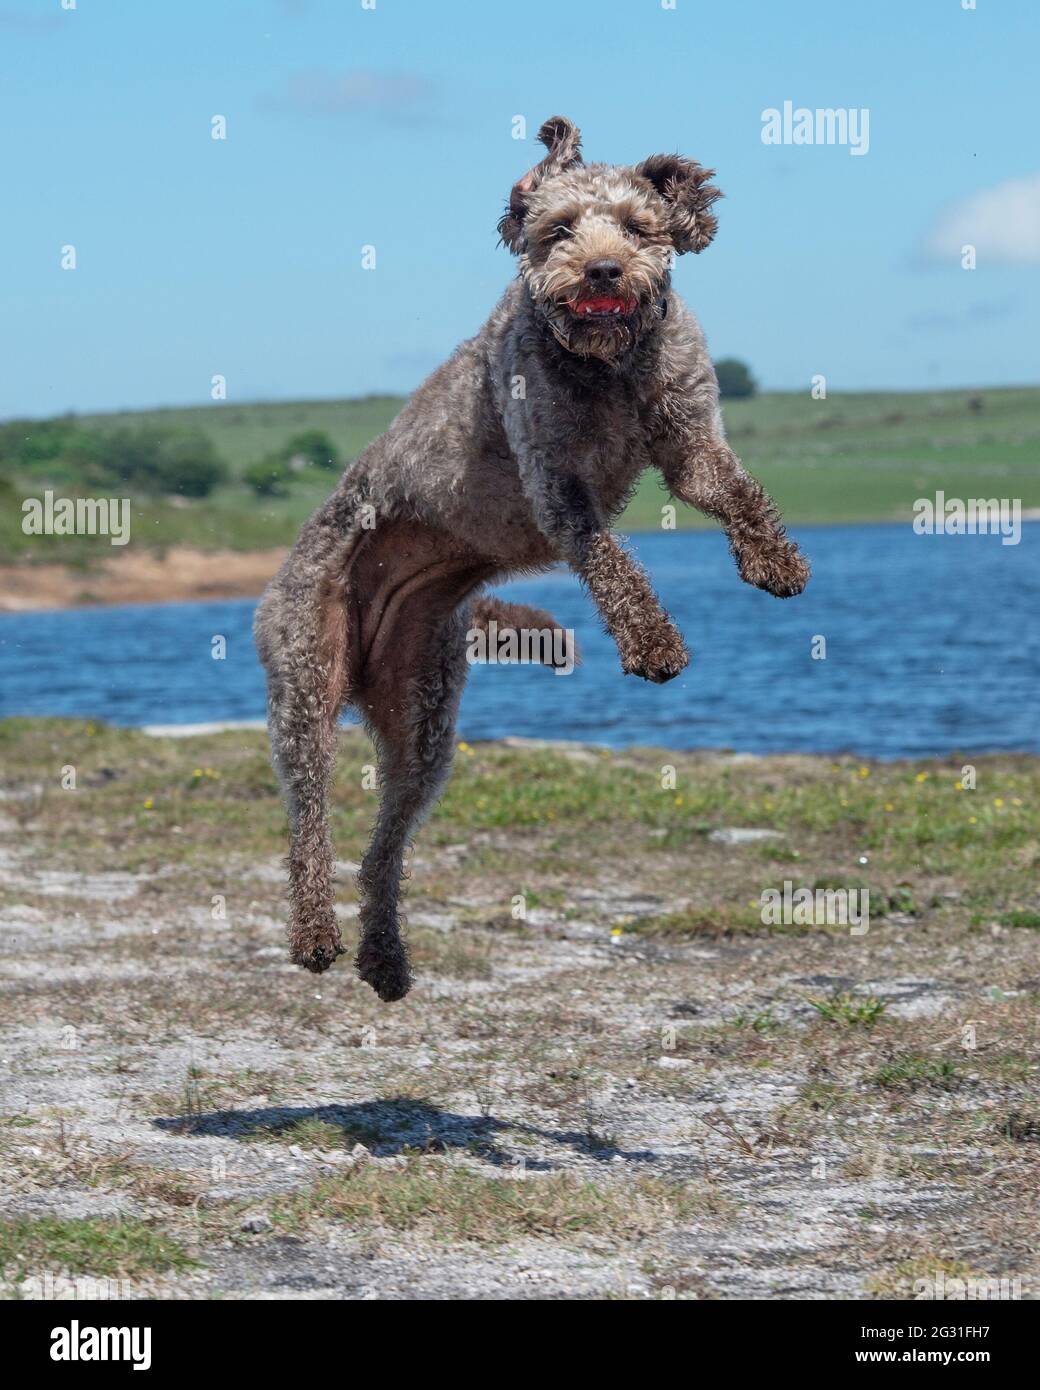 perro de labradoodle atrapando una bola a mitad del aire Foto de stock